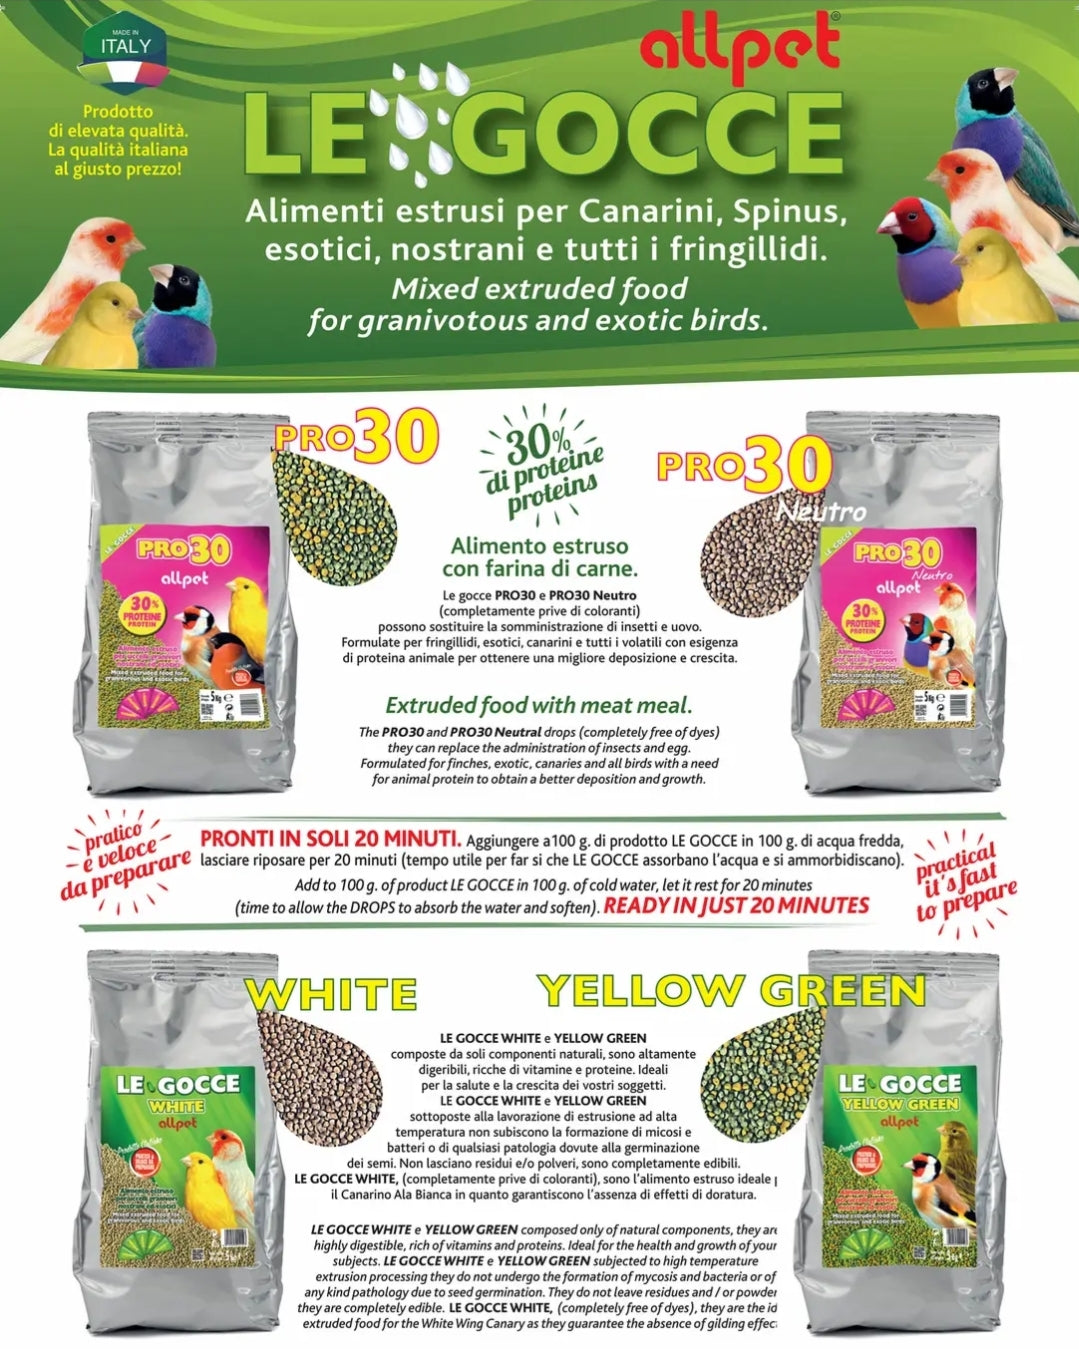 Le Gocce Pro30 900gram ( kiemzaad vervanger, kleur groen geel ) 30% Proteïnen - All Pet